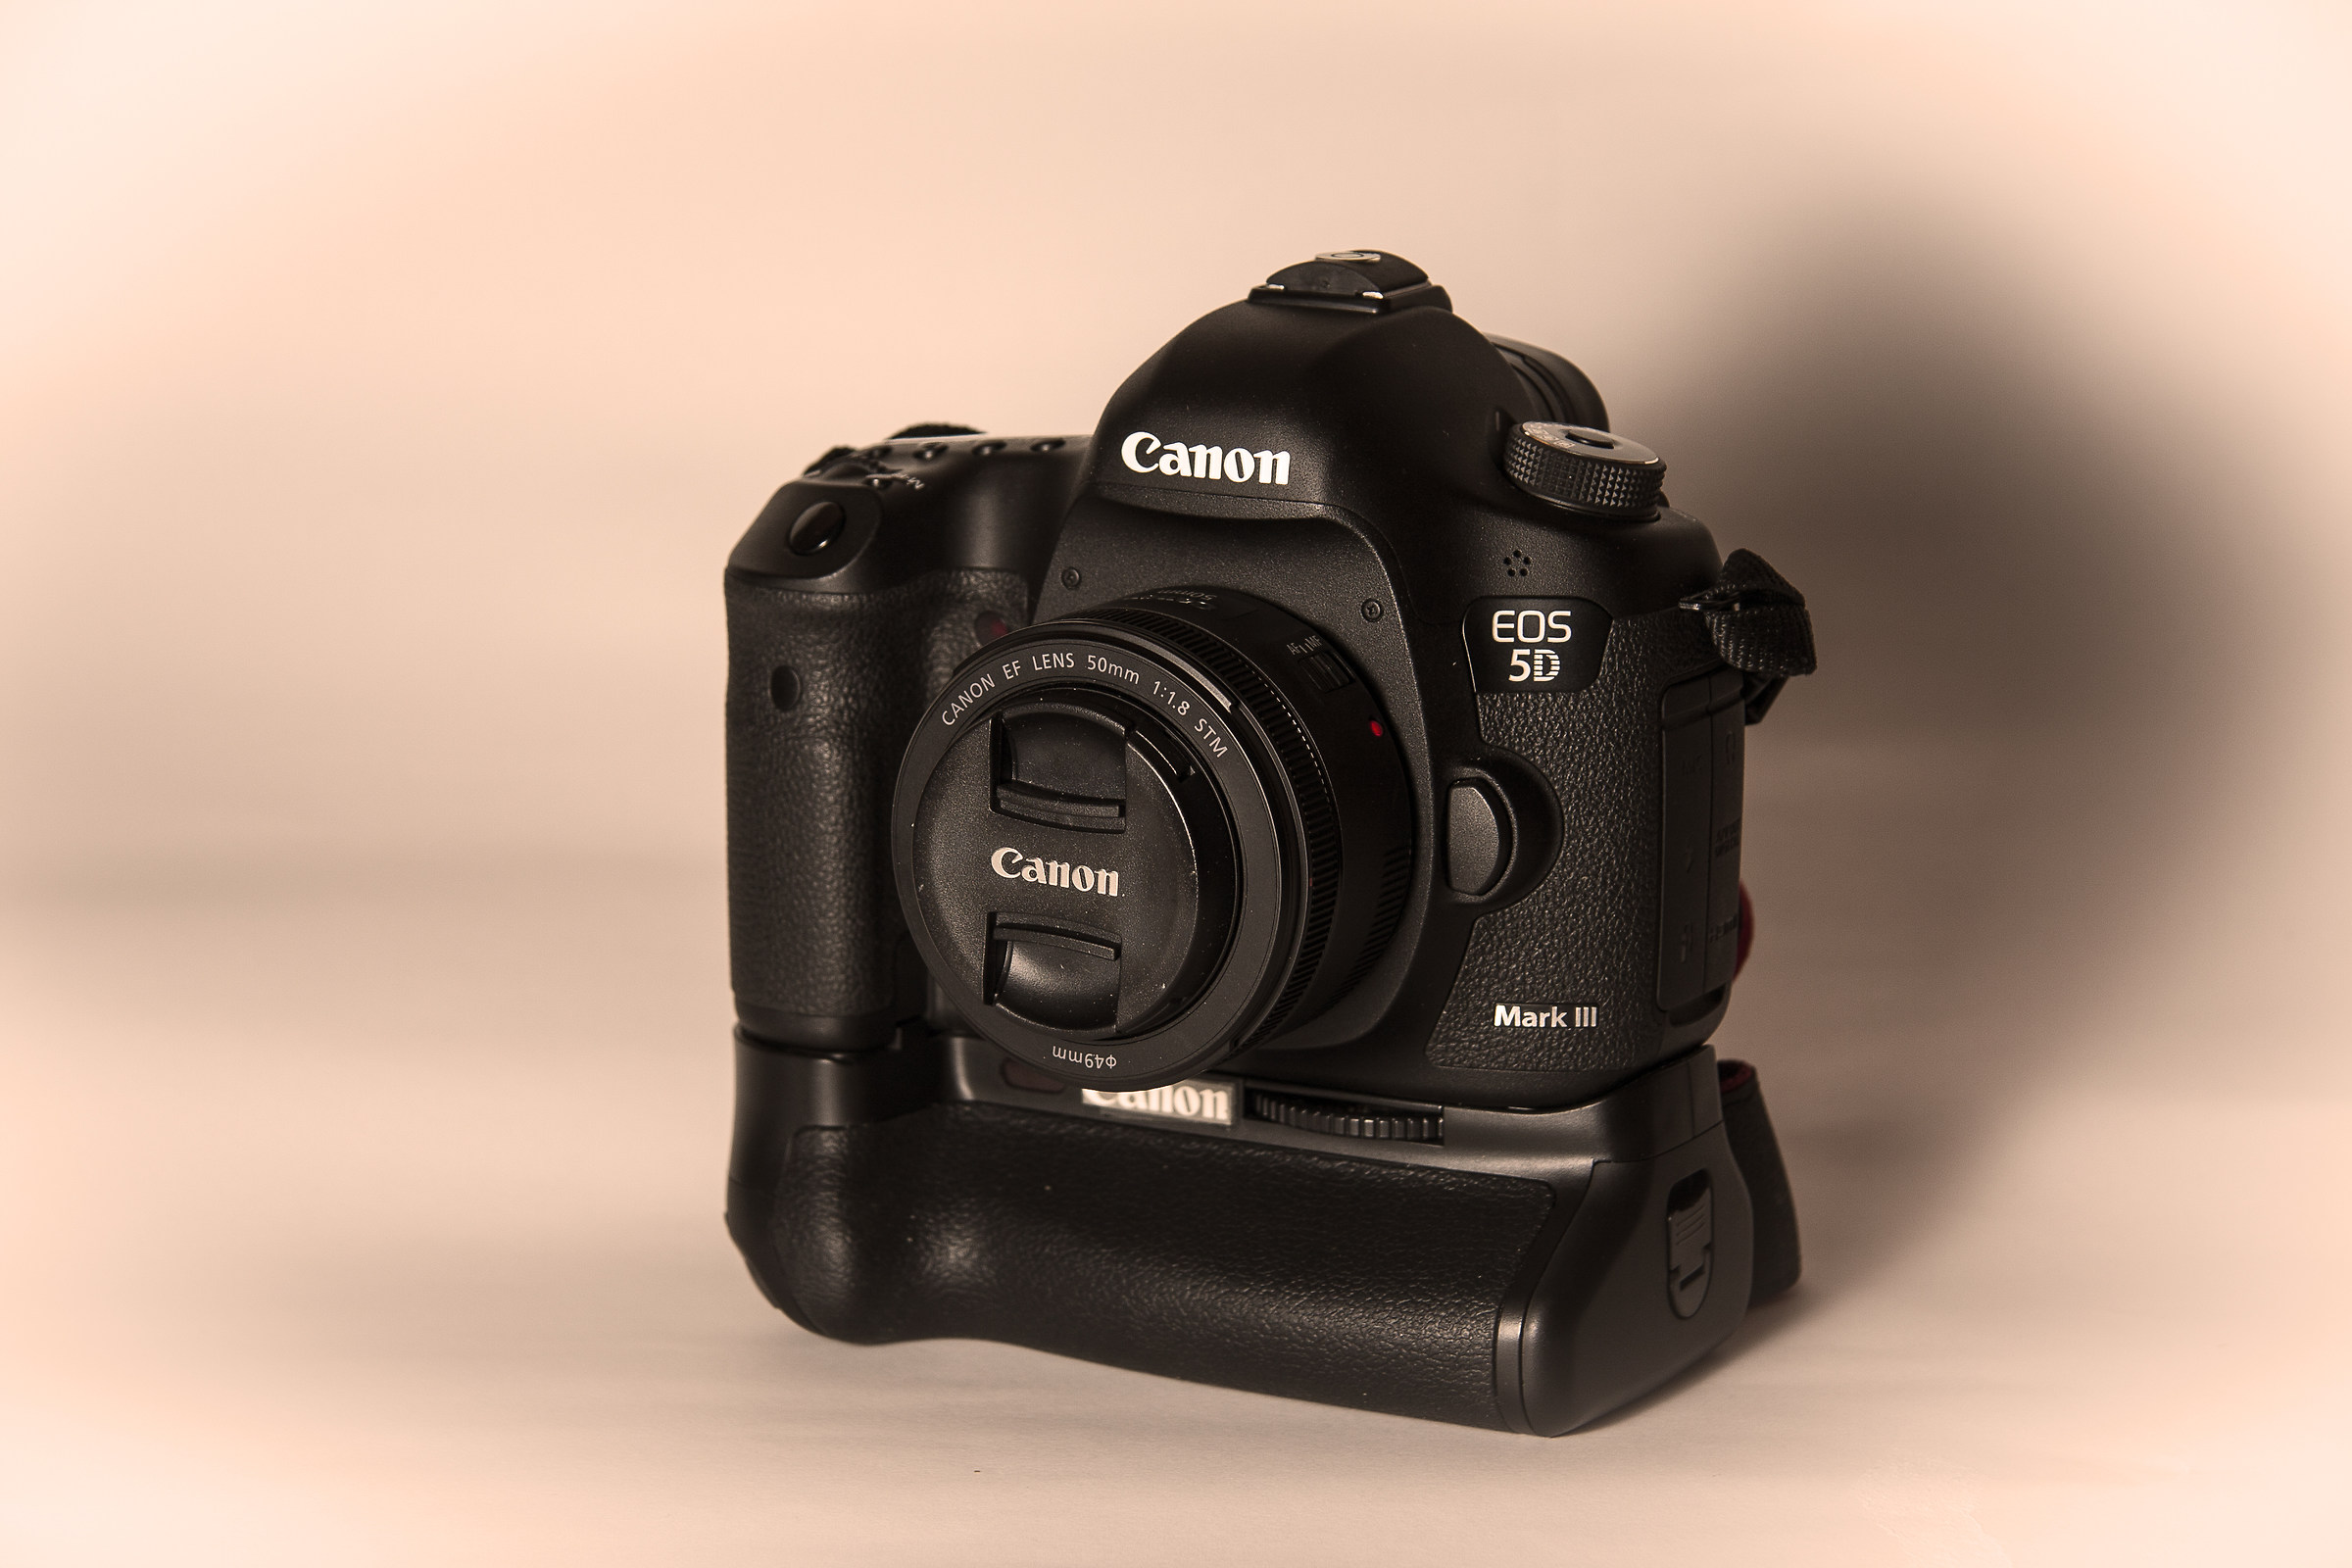 My new Canon 5D mark iii...